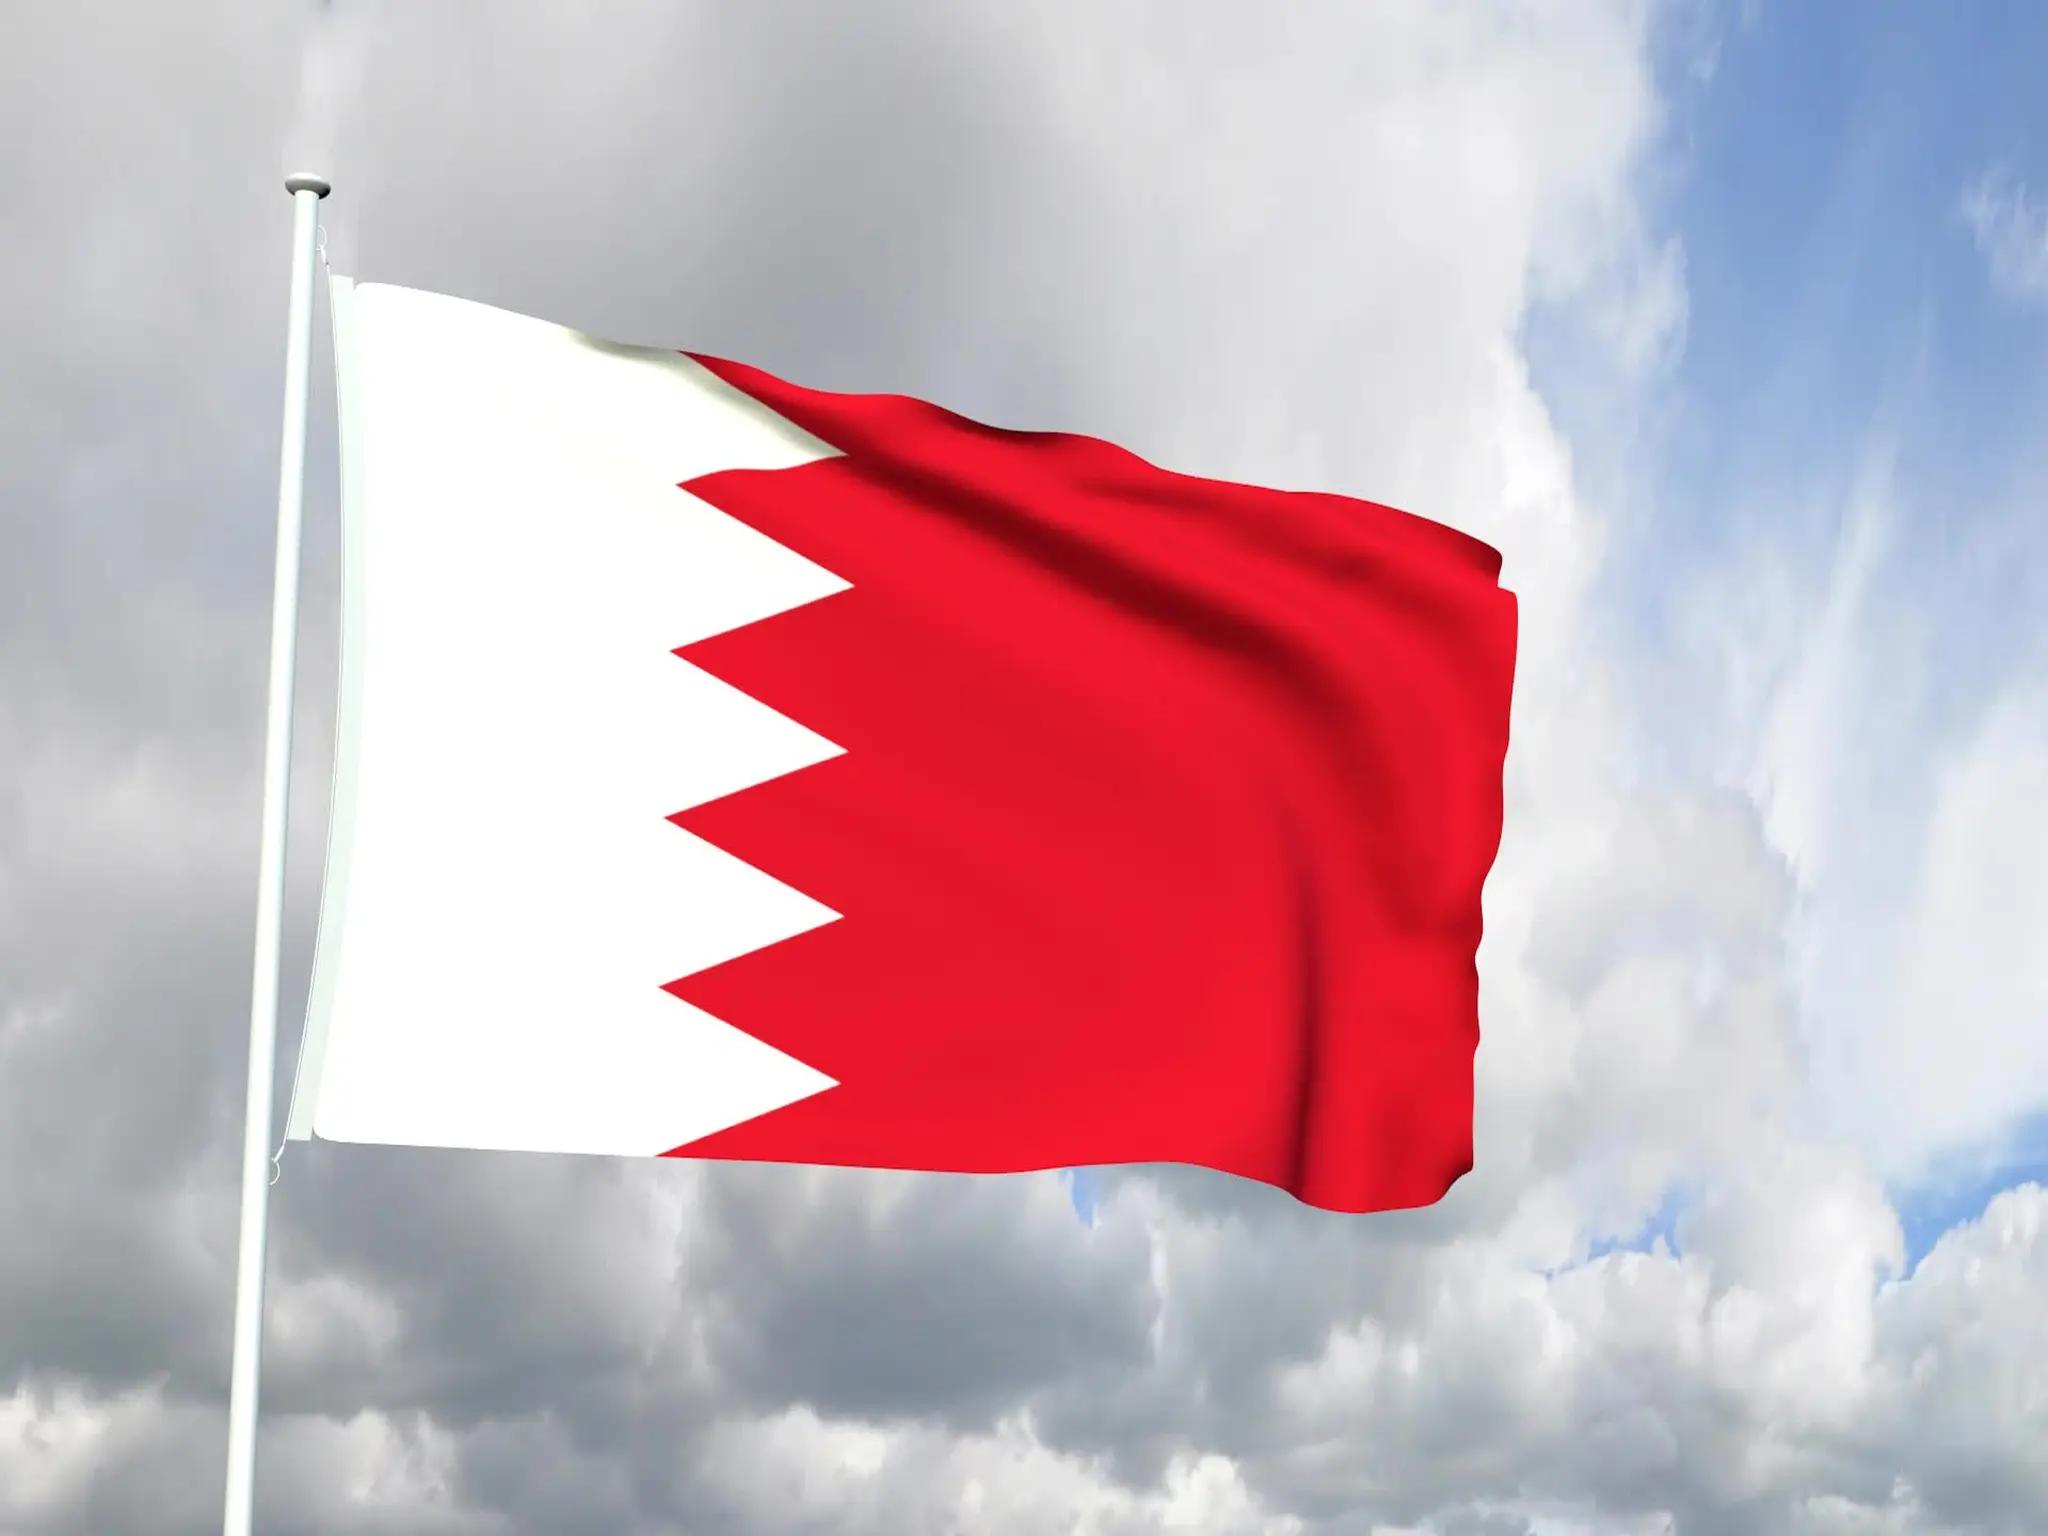 مجلس الشورى البحريني يدرس إقتراح إضافة خدمات إسكانية لذوى الدخل المحدود